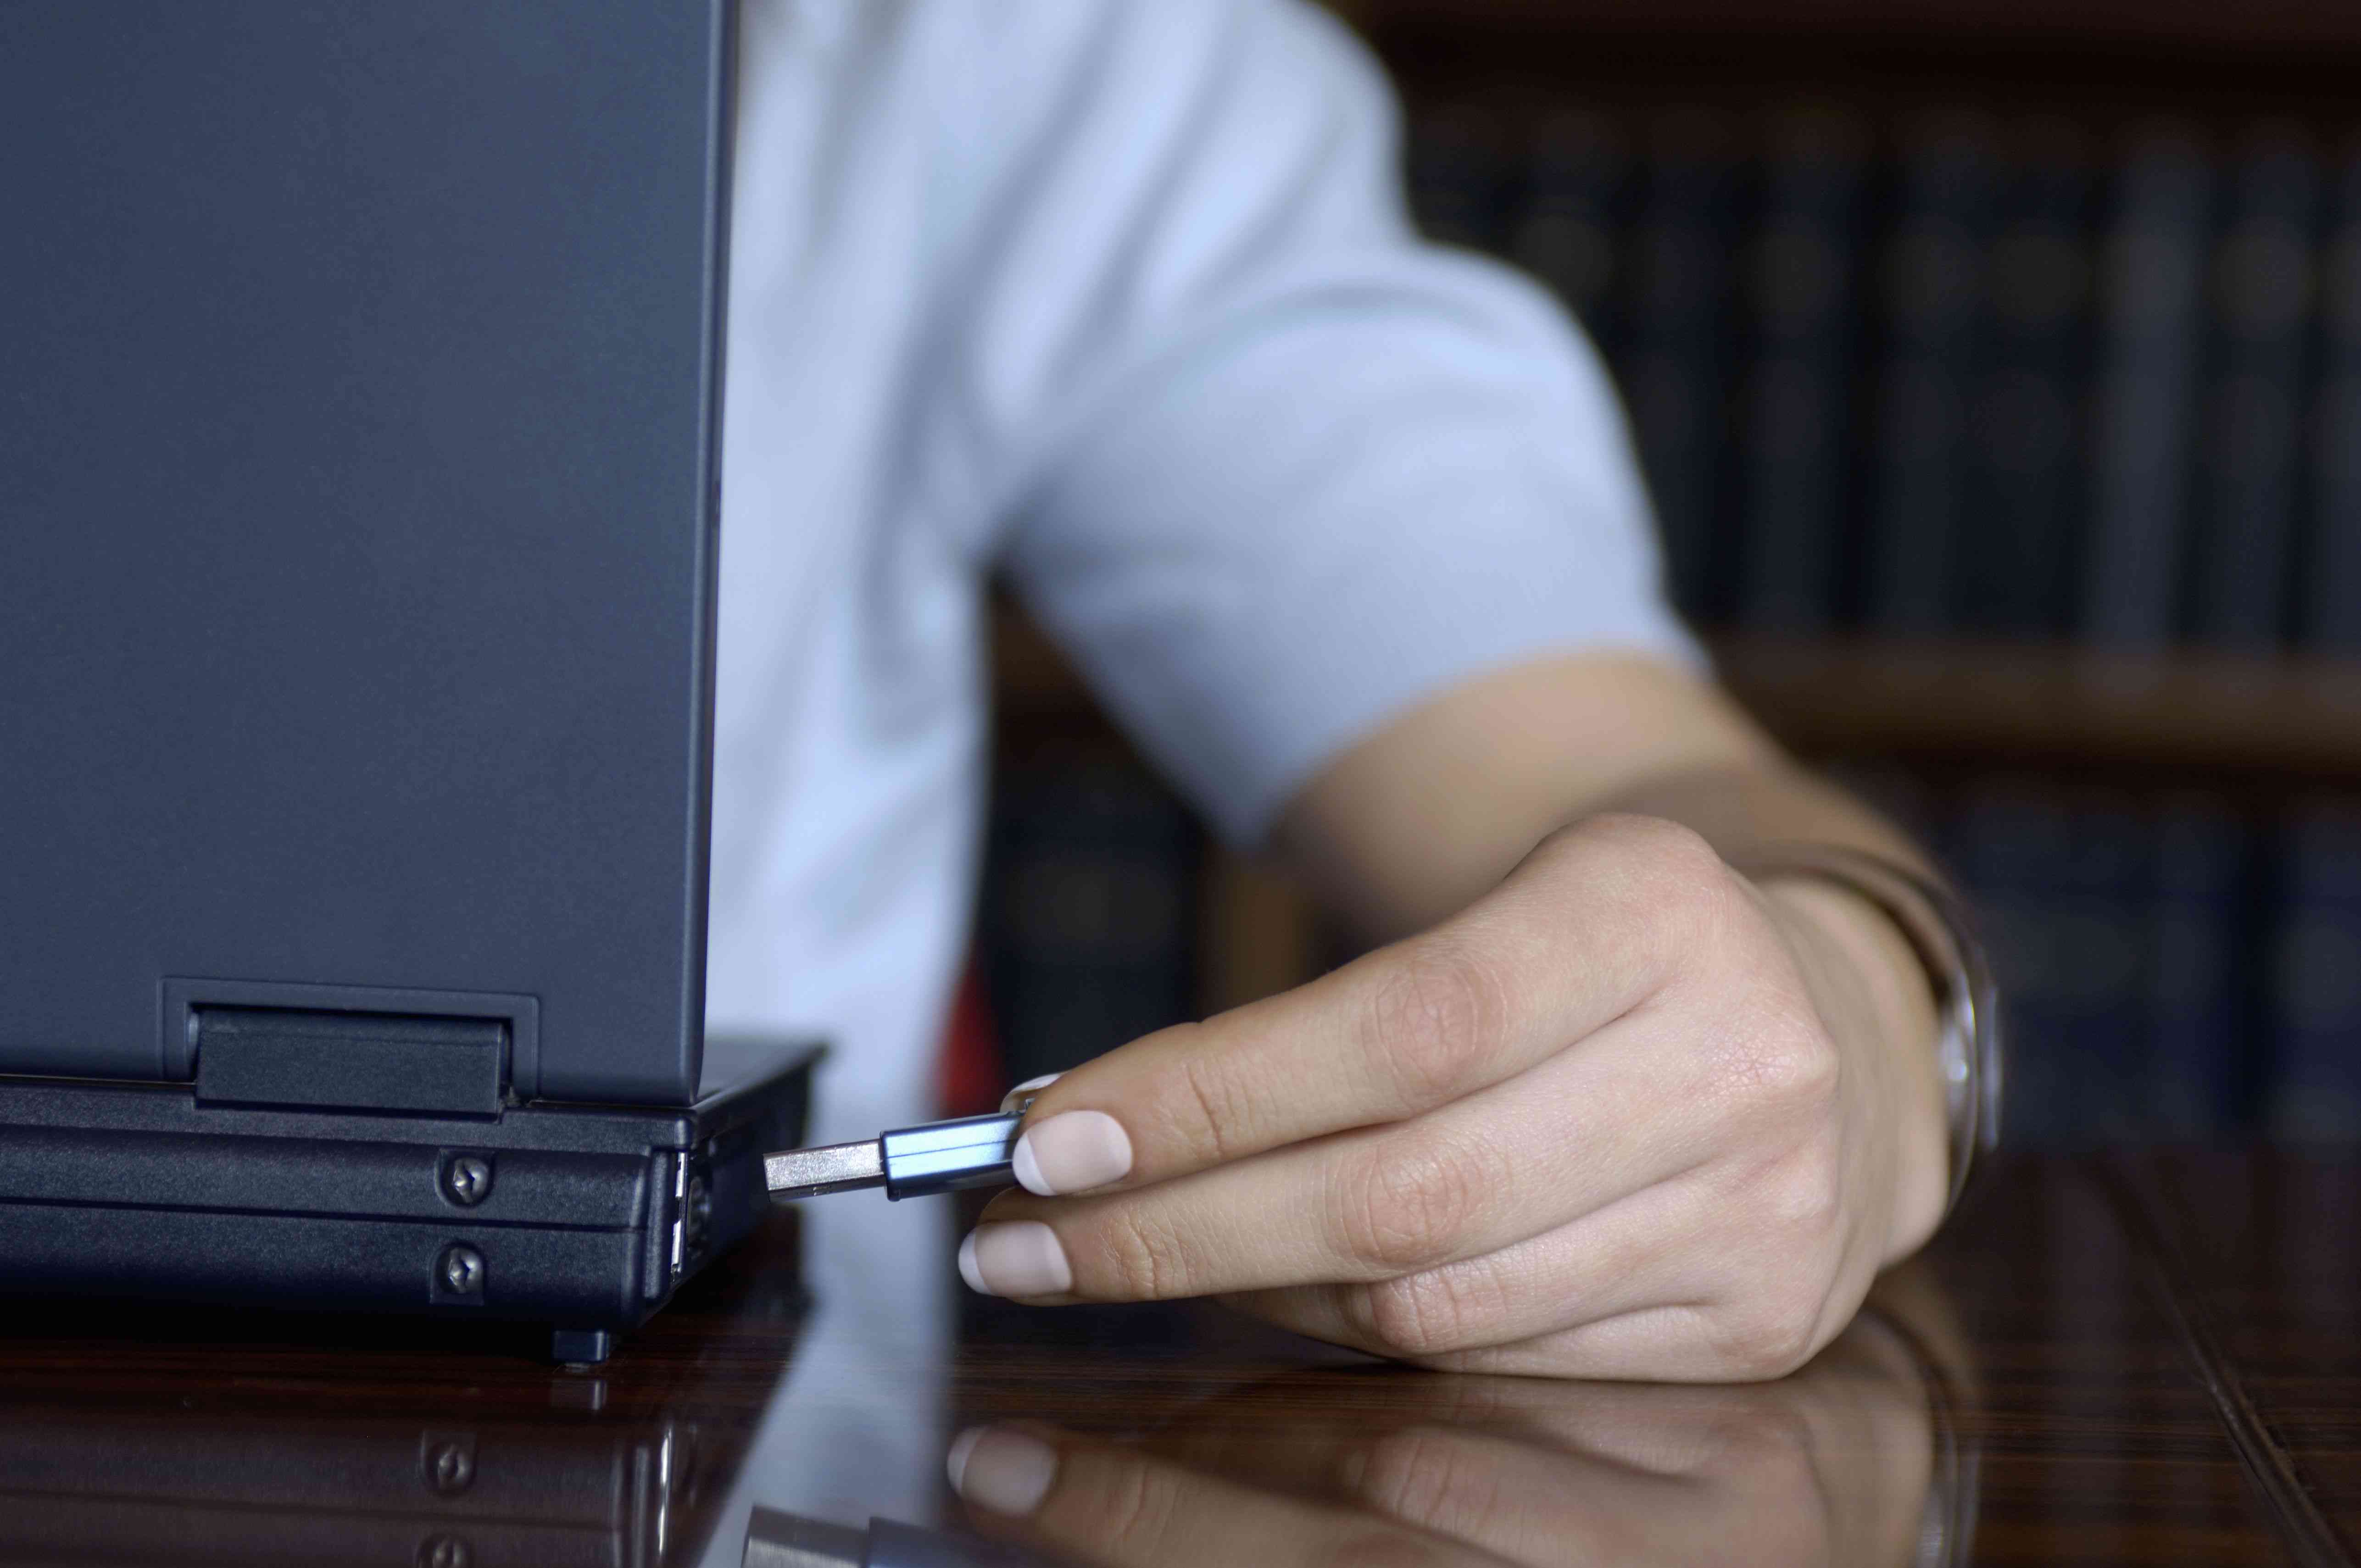 Mulher jovem usando um disco rígido USB portátil em um laptop, close-up